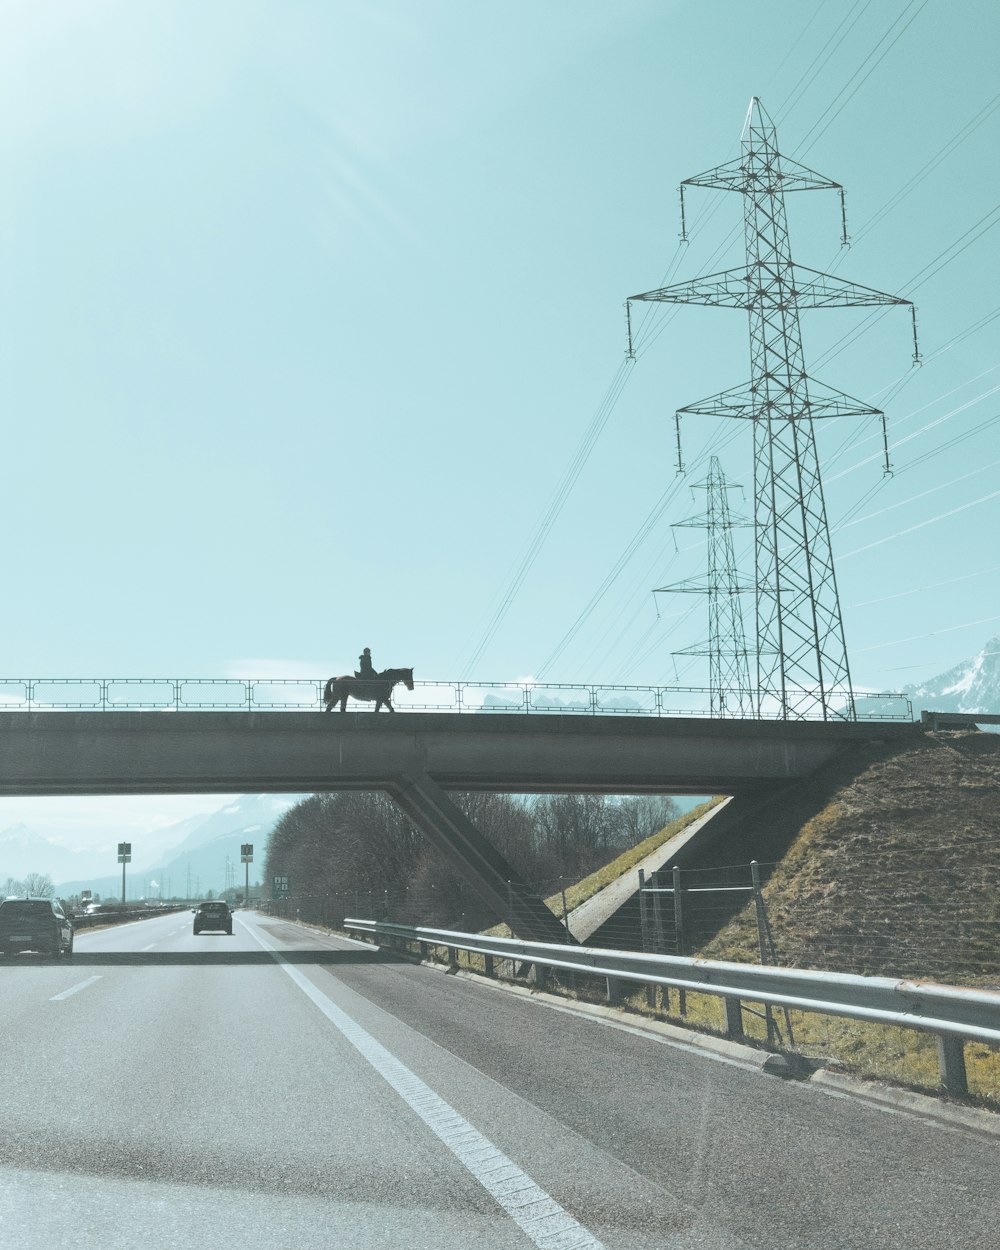 a person riding a horse across a bridge